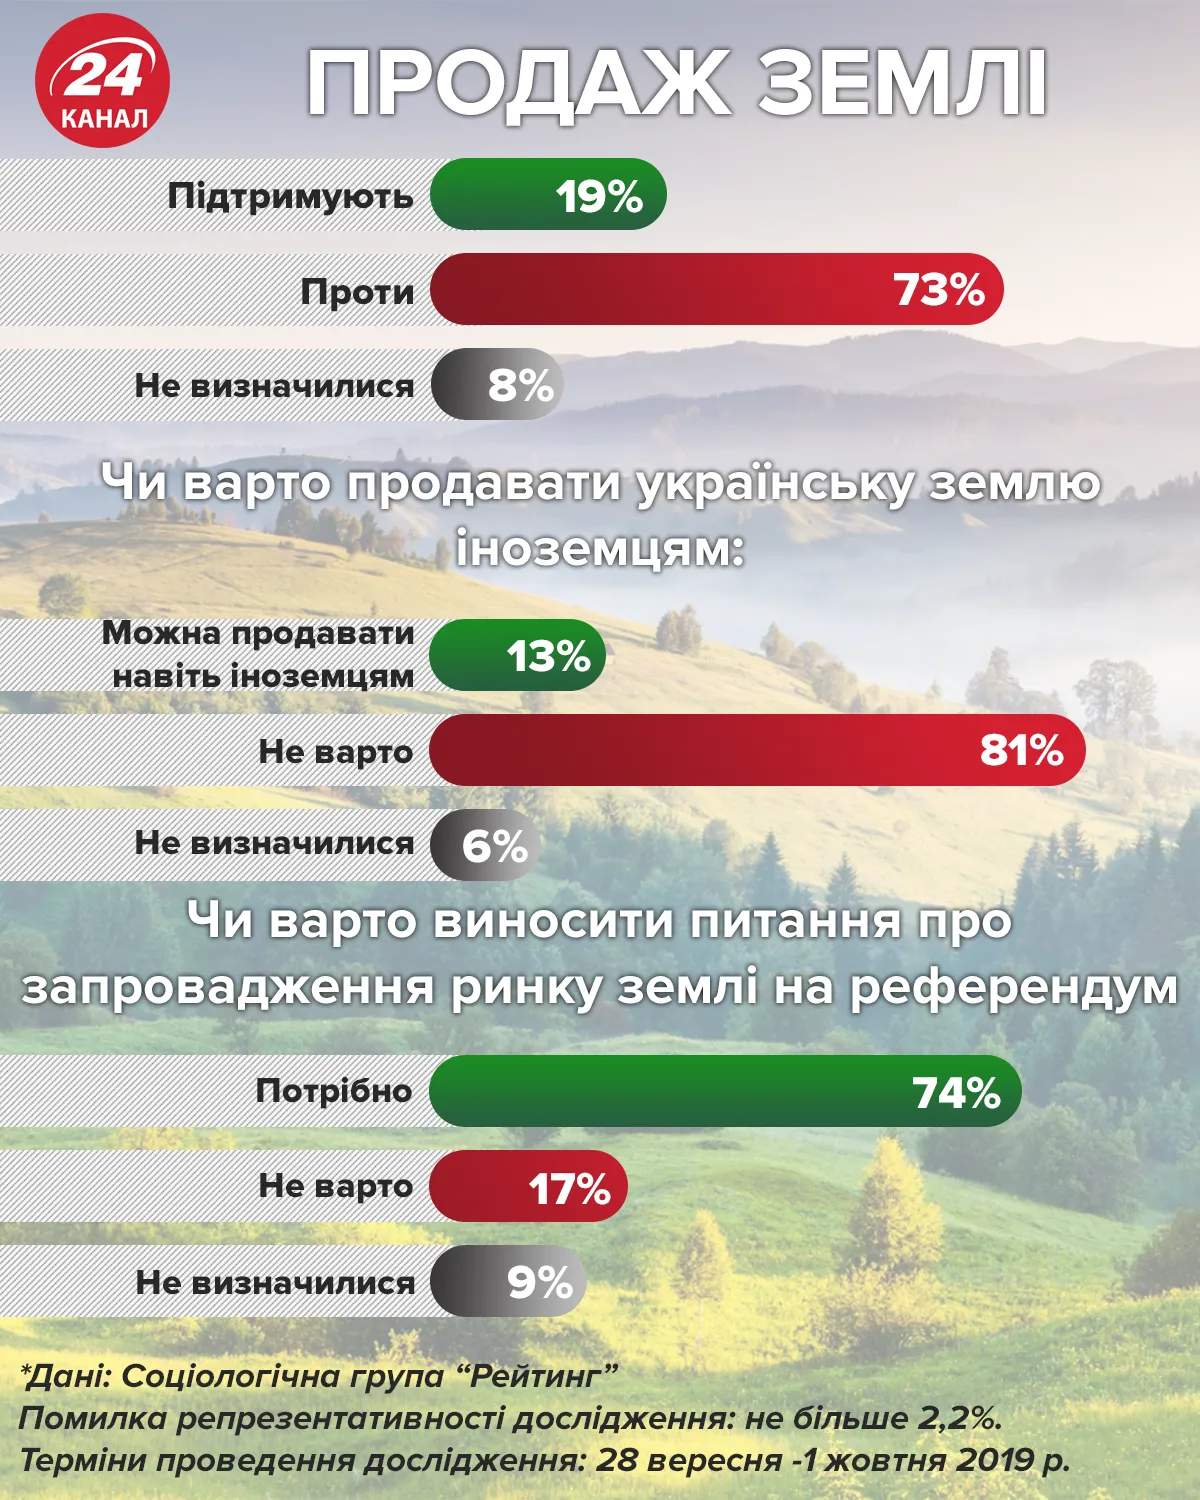 ринок землі думка українців продаж землі іноземцям референдум опитування статистика